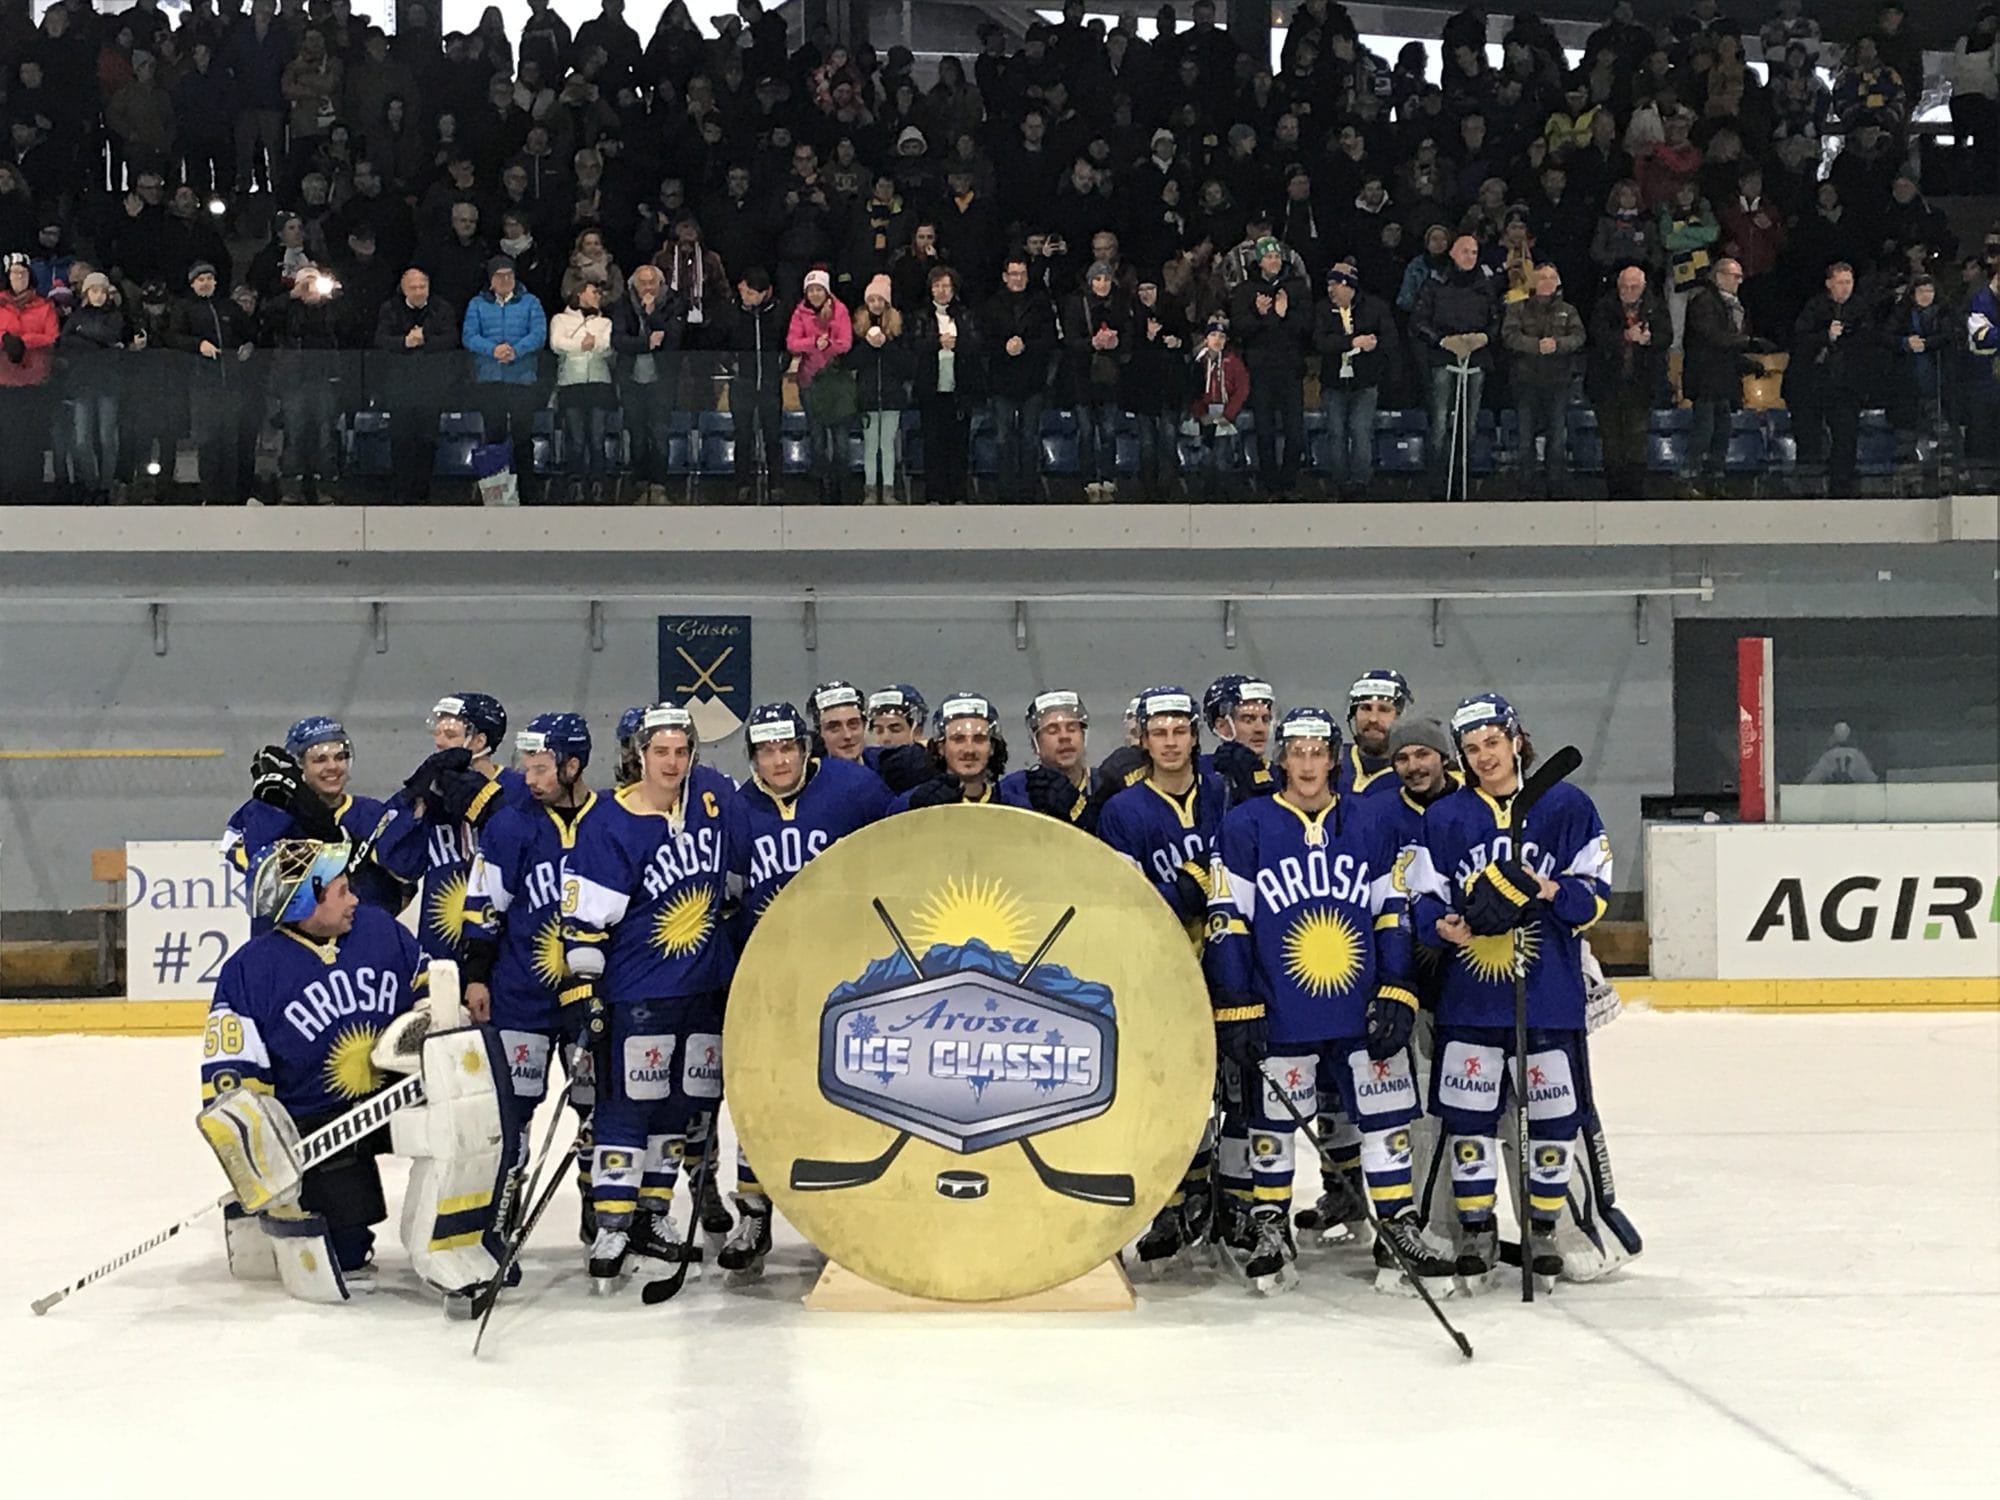 Arosa Ice Classic 2018: Der EHC Arosa gewinnt sensationell gegen die ZSC Lions 7:5 und somit die erste Austragung.